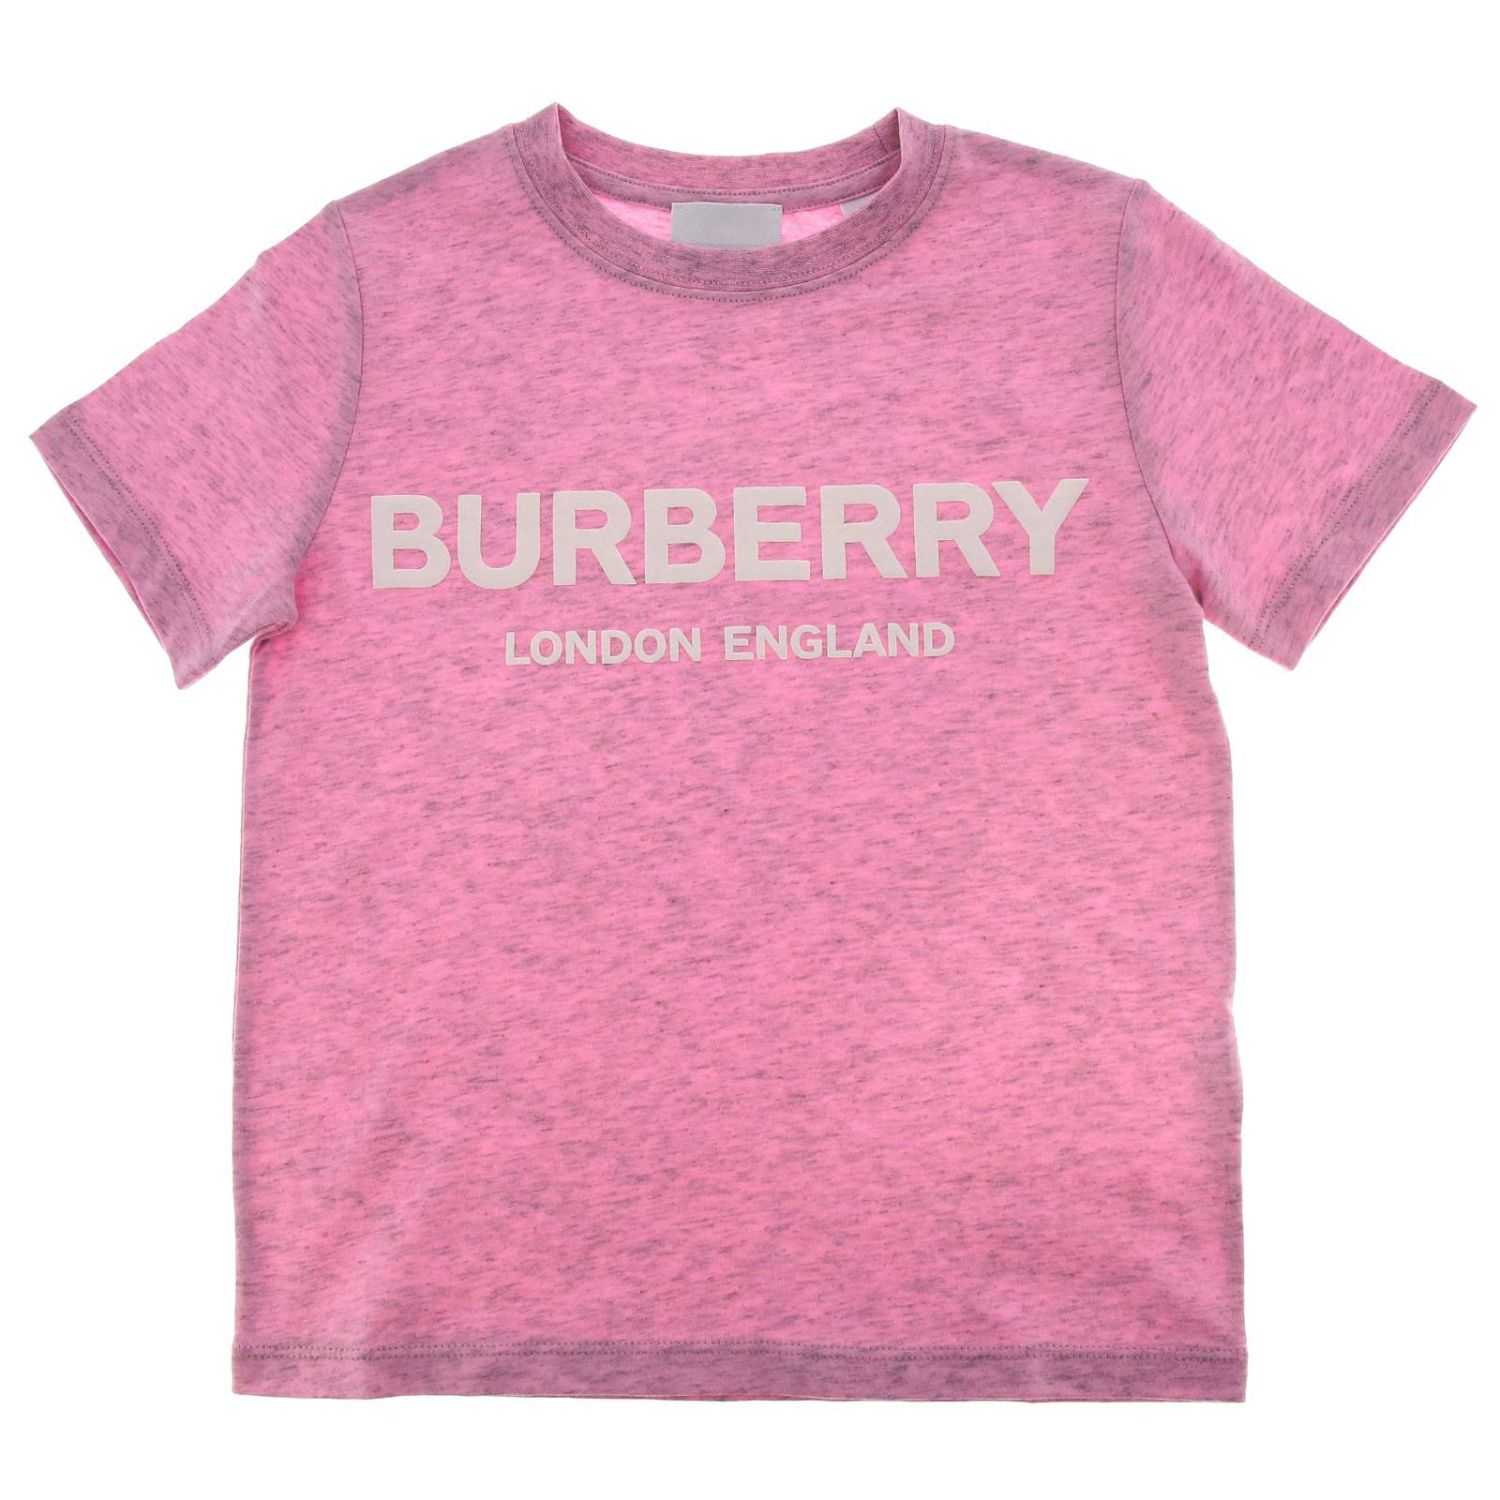 burberry t shirt kids pink